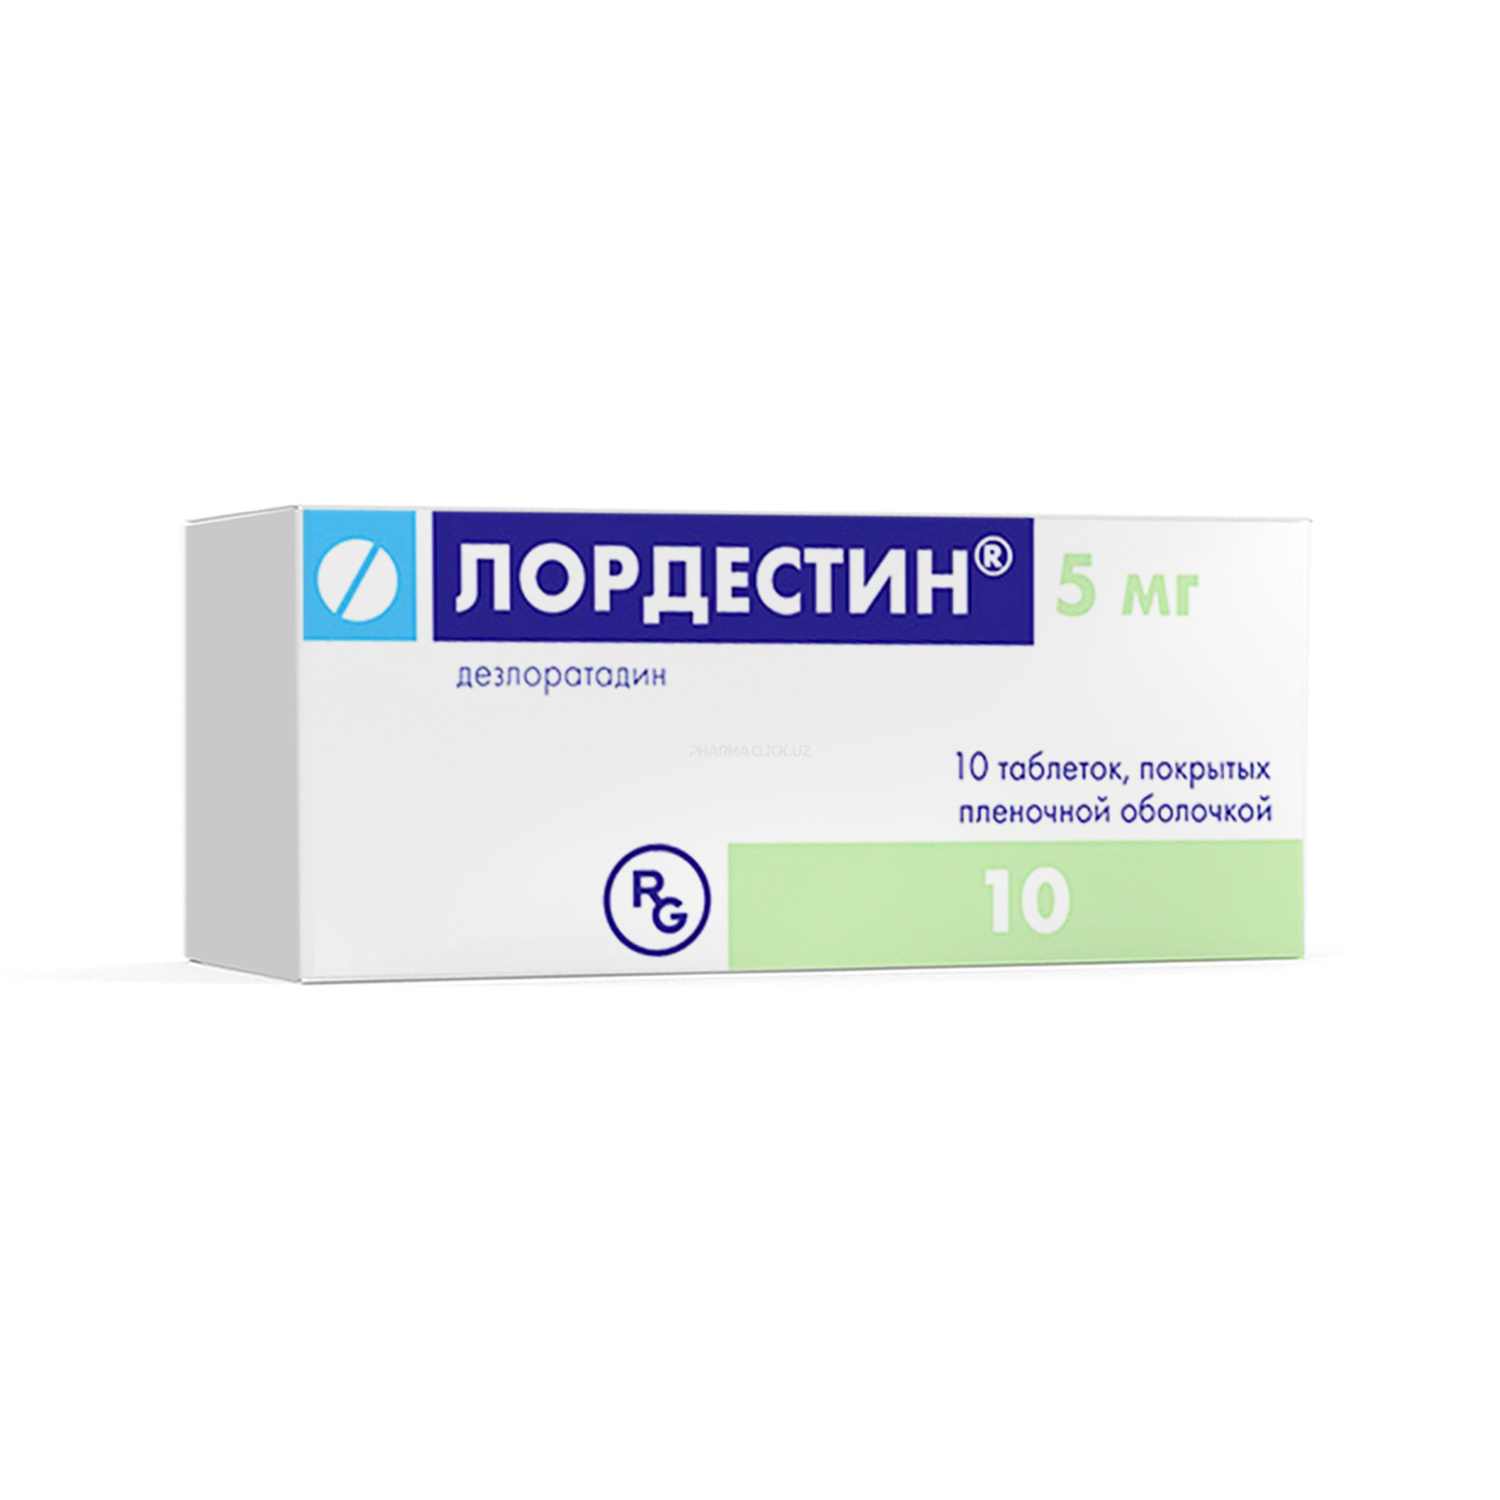 Lordestin 5 mg tab. №10